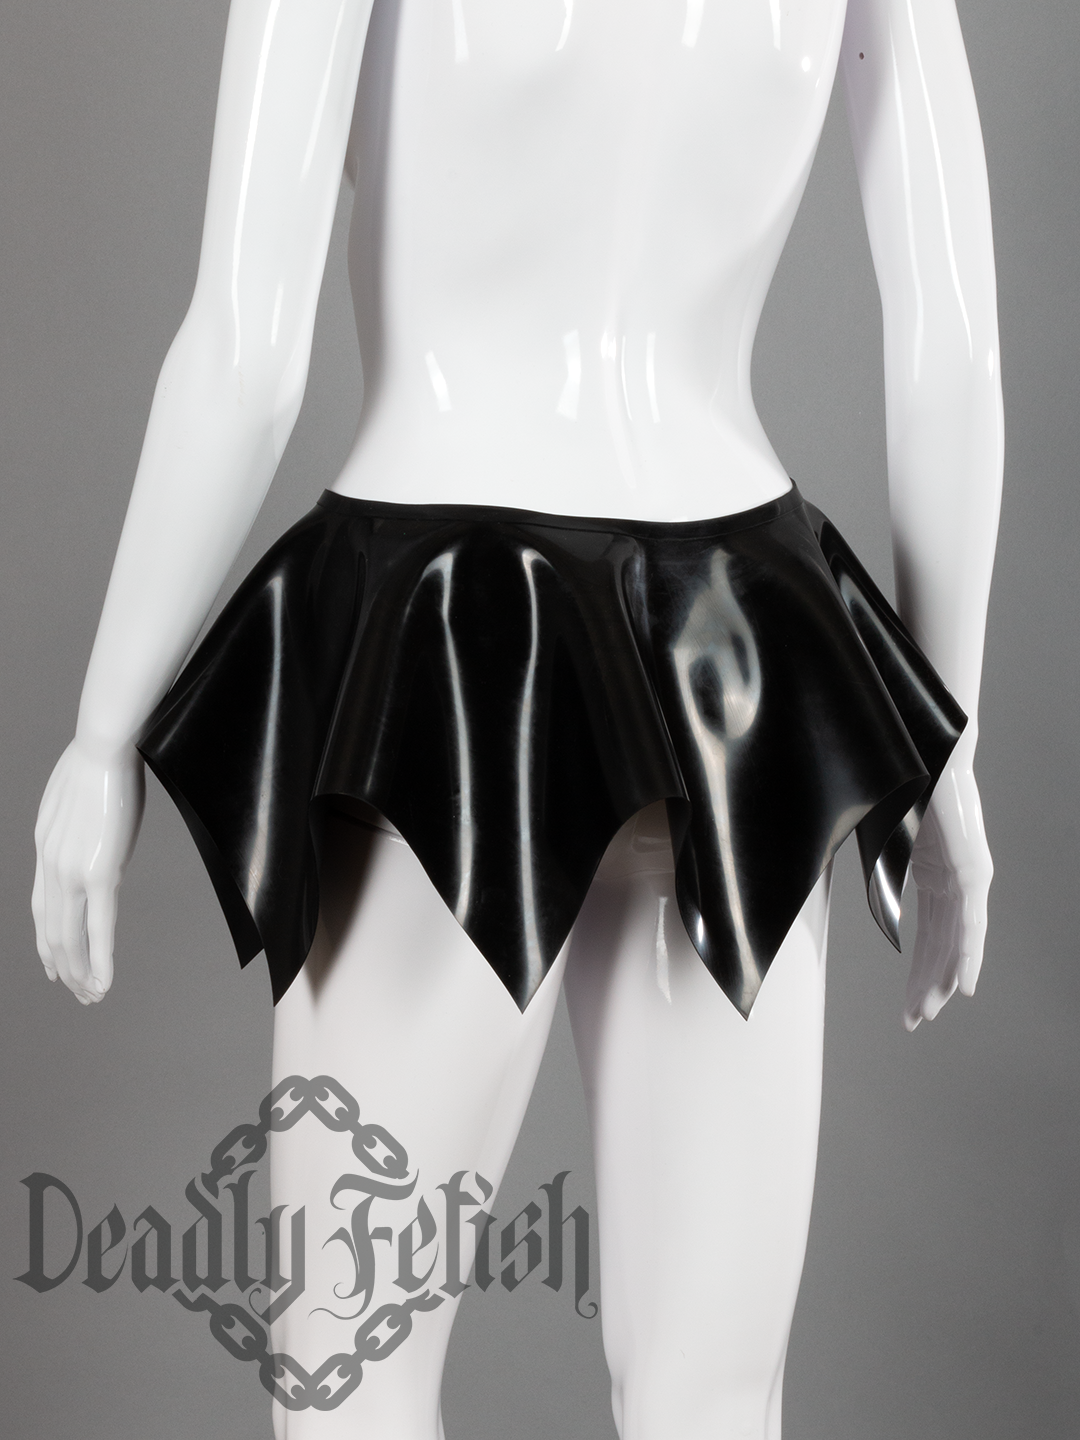 Deadly Fetish Latex: Skirt #14